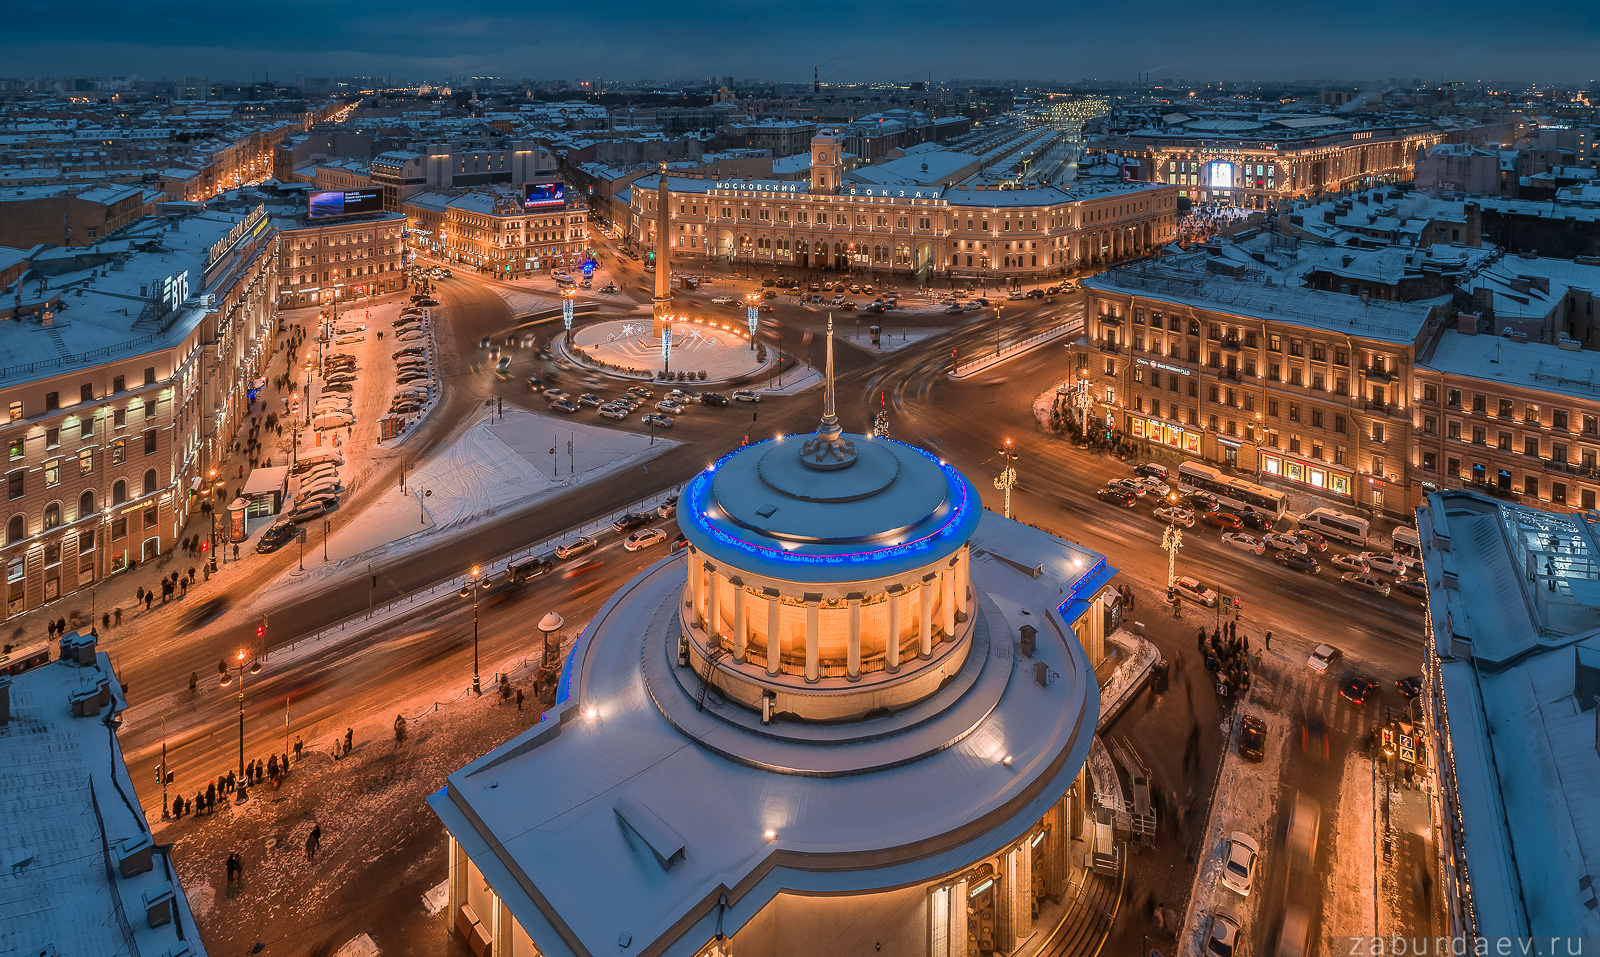 Площадь Восстания и Московский вокзал россия петербург зима новый год площадь снег вечер